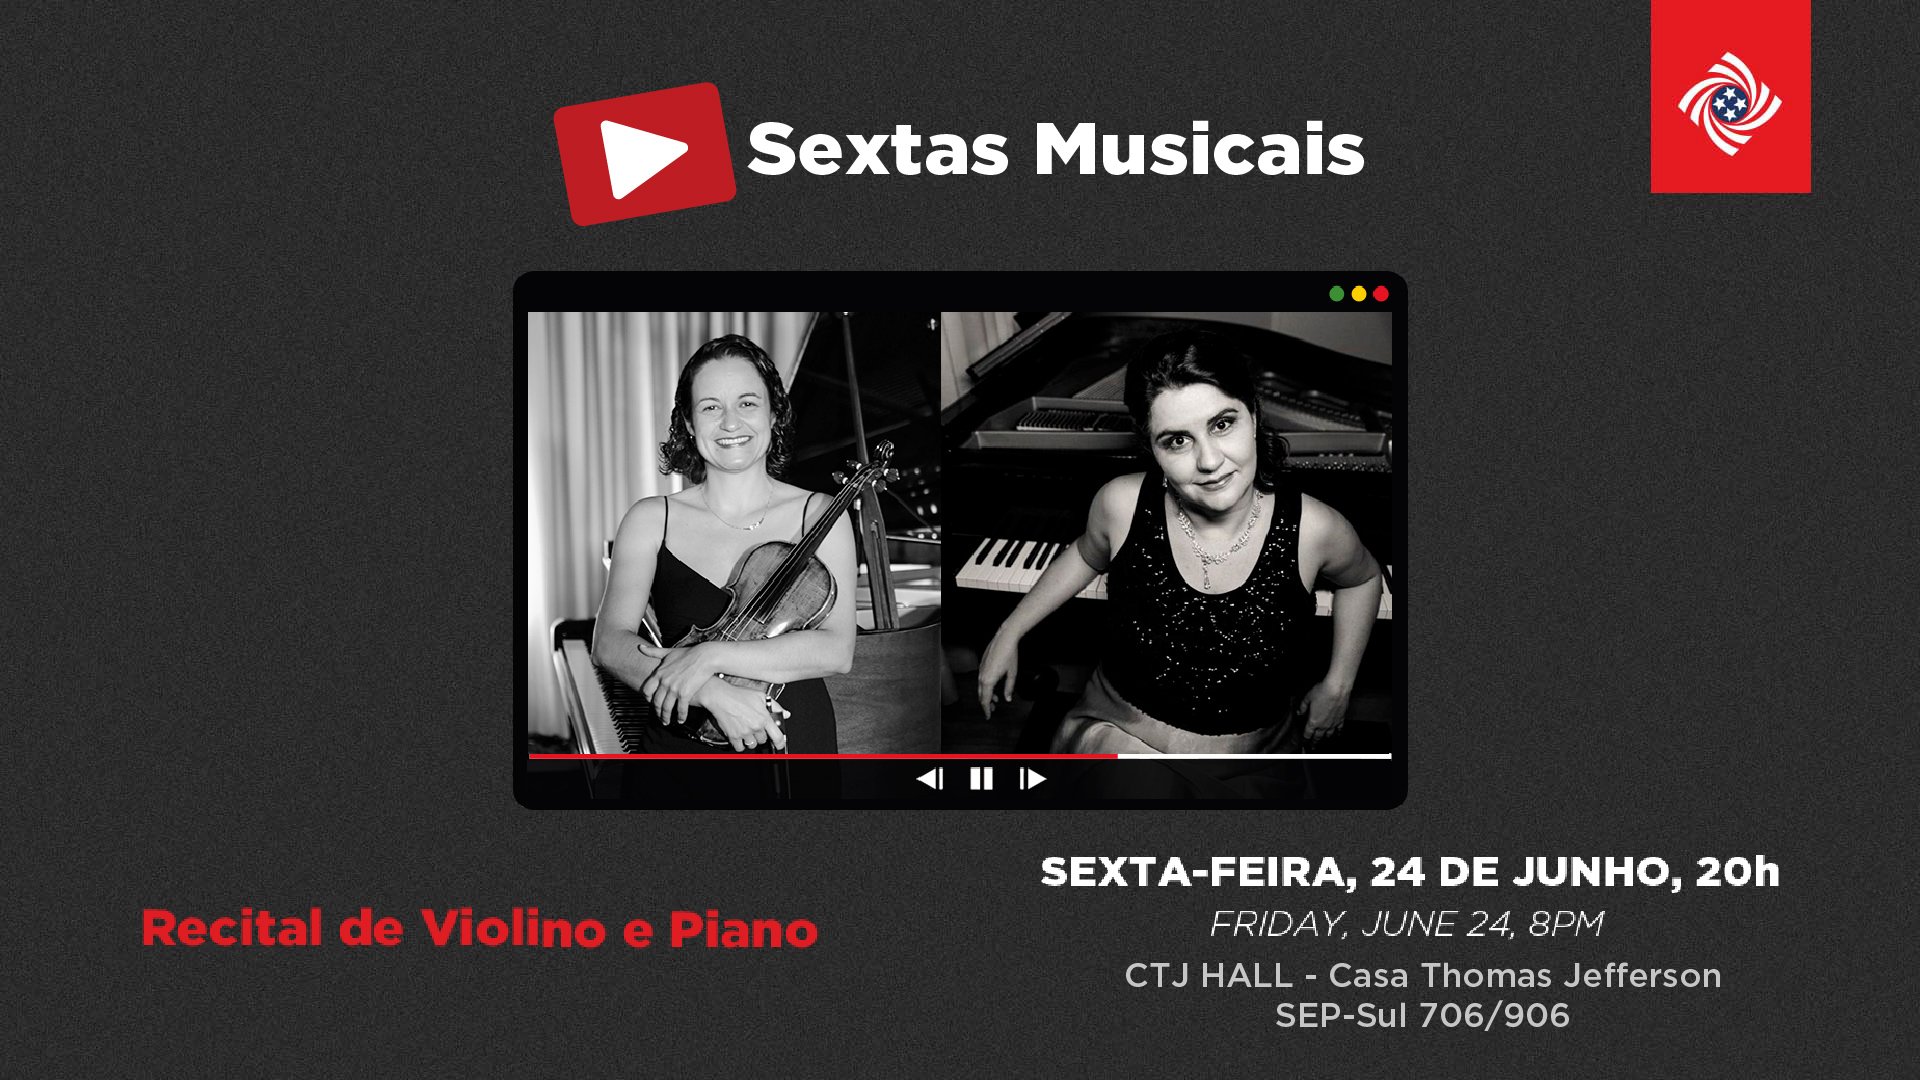 Recital gratuito de violino e piano homenageia Almeida Prado (1943-2010)